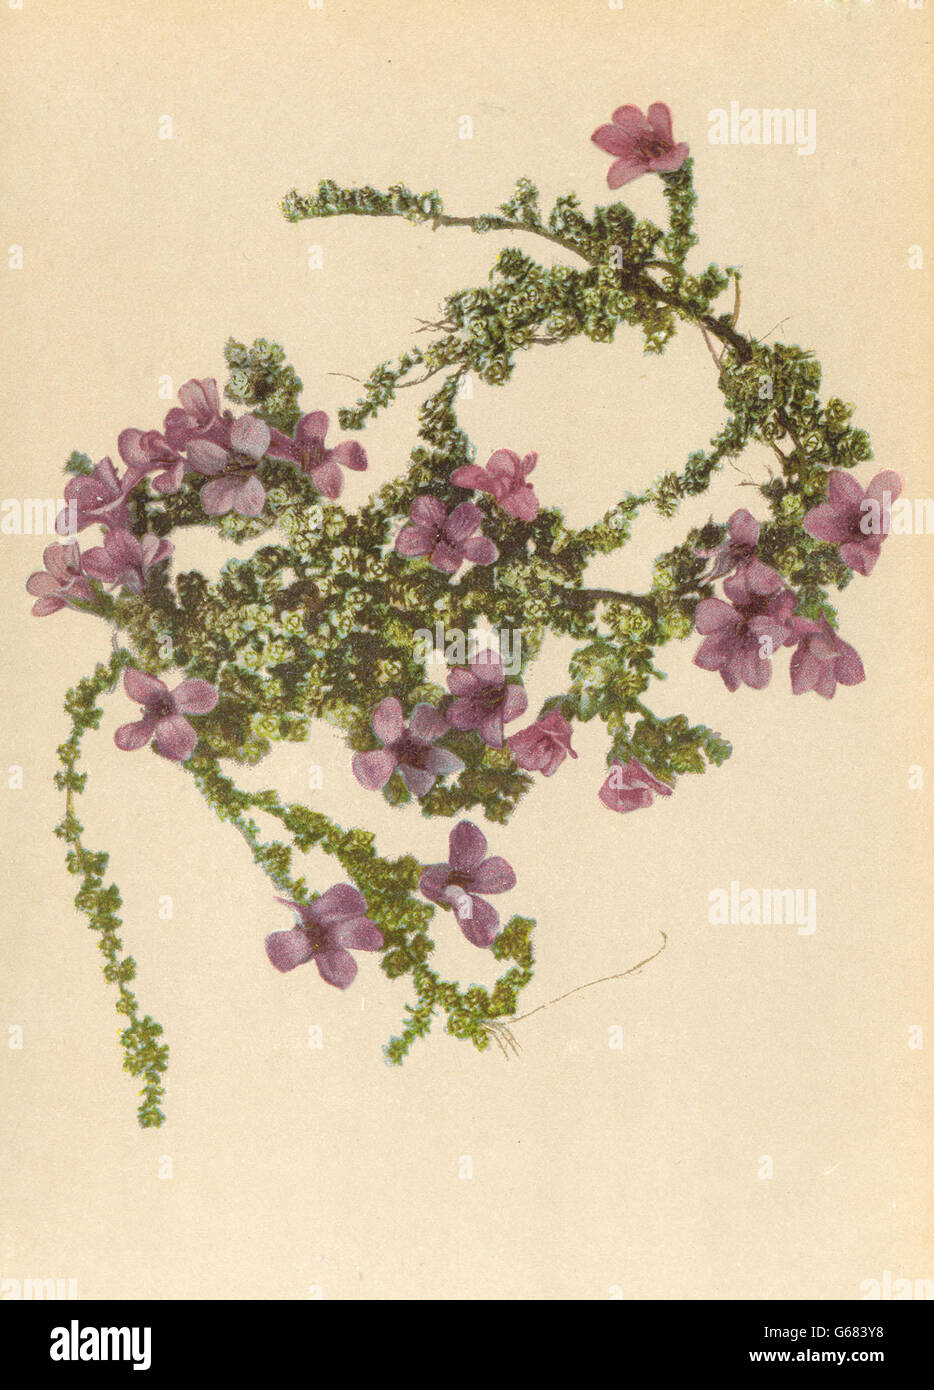 ALPINE FLOWERS: Saxifraga oppositifolia L-Gegenblättriger Steinbrech, 1897 Stock Photo